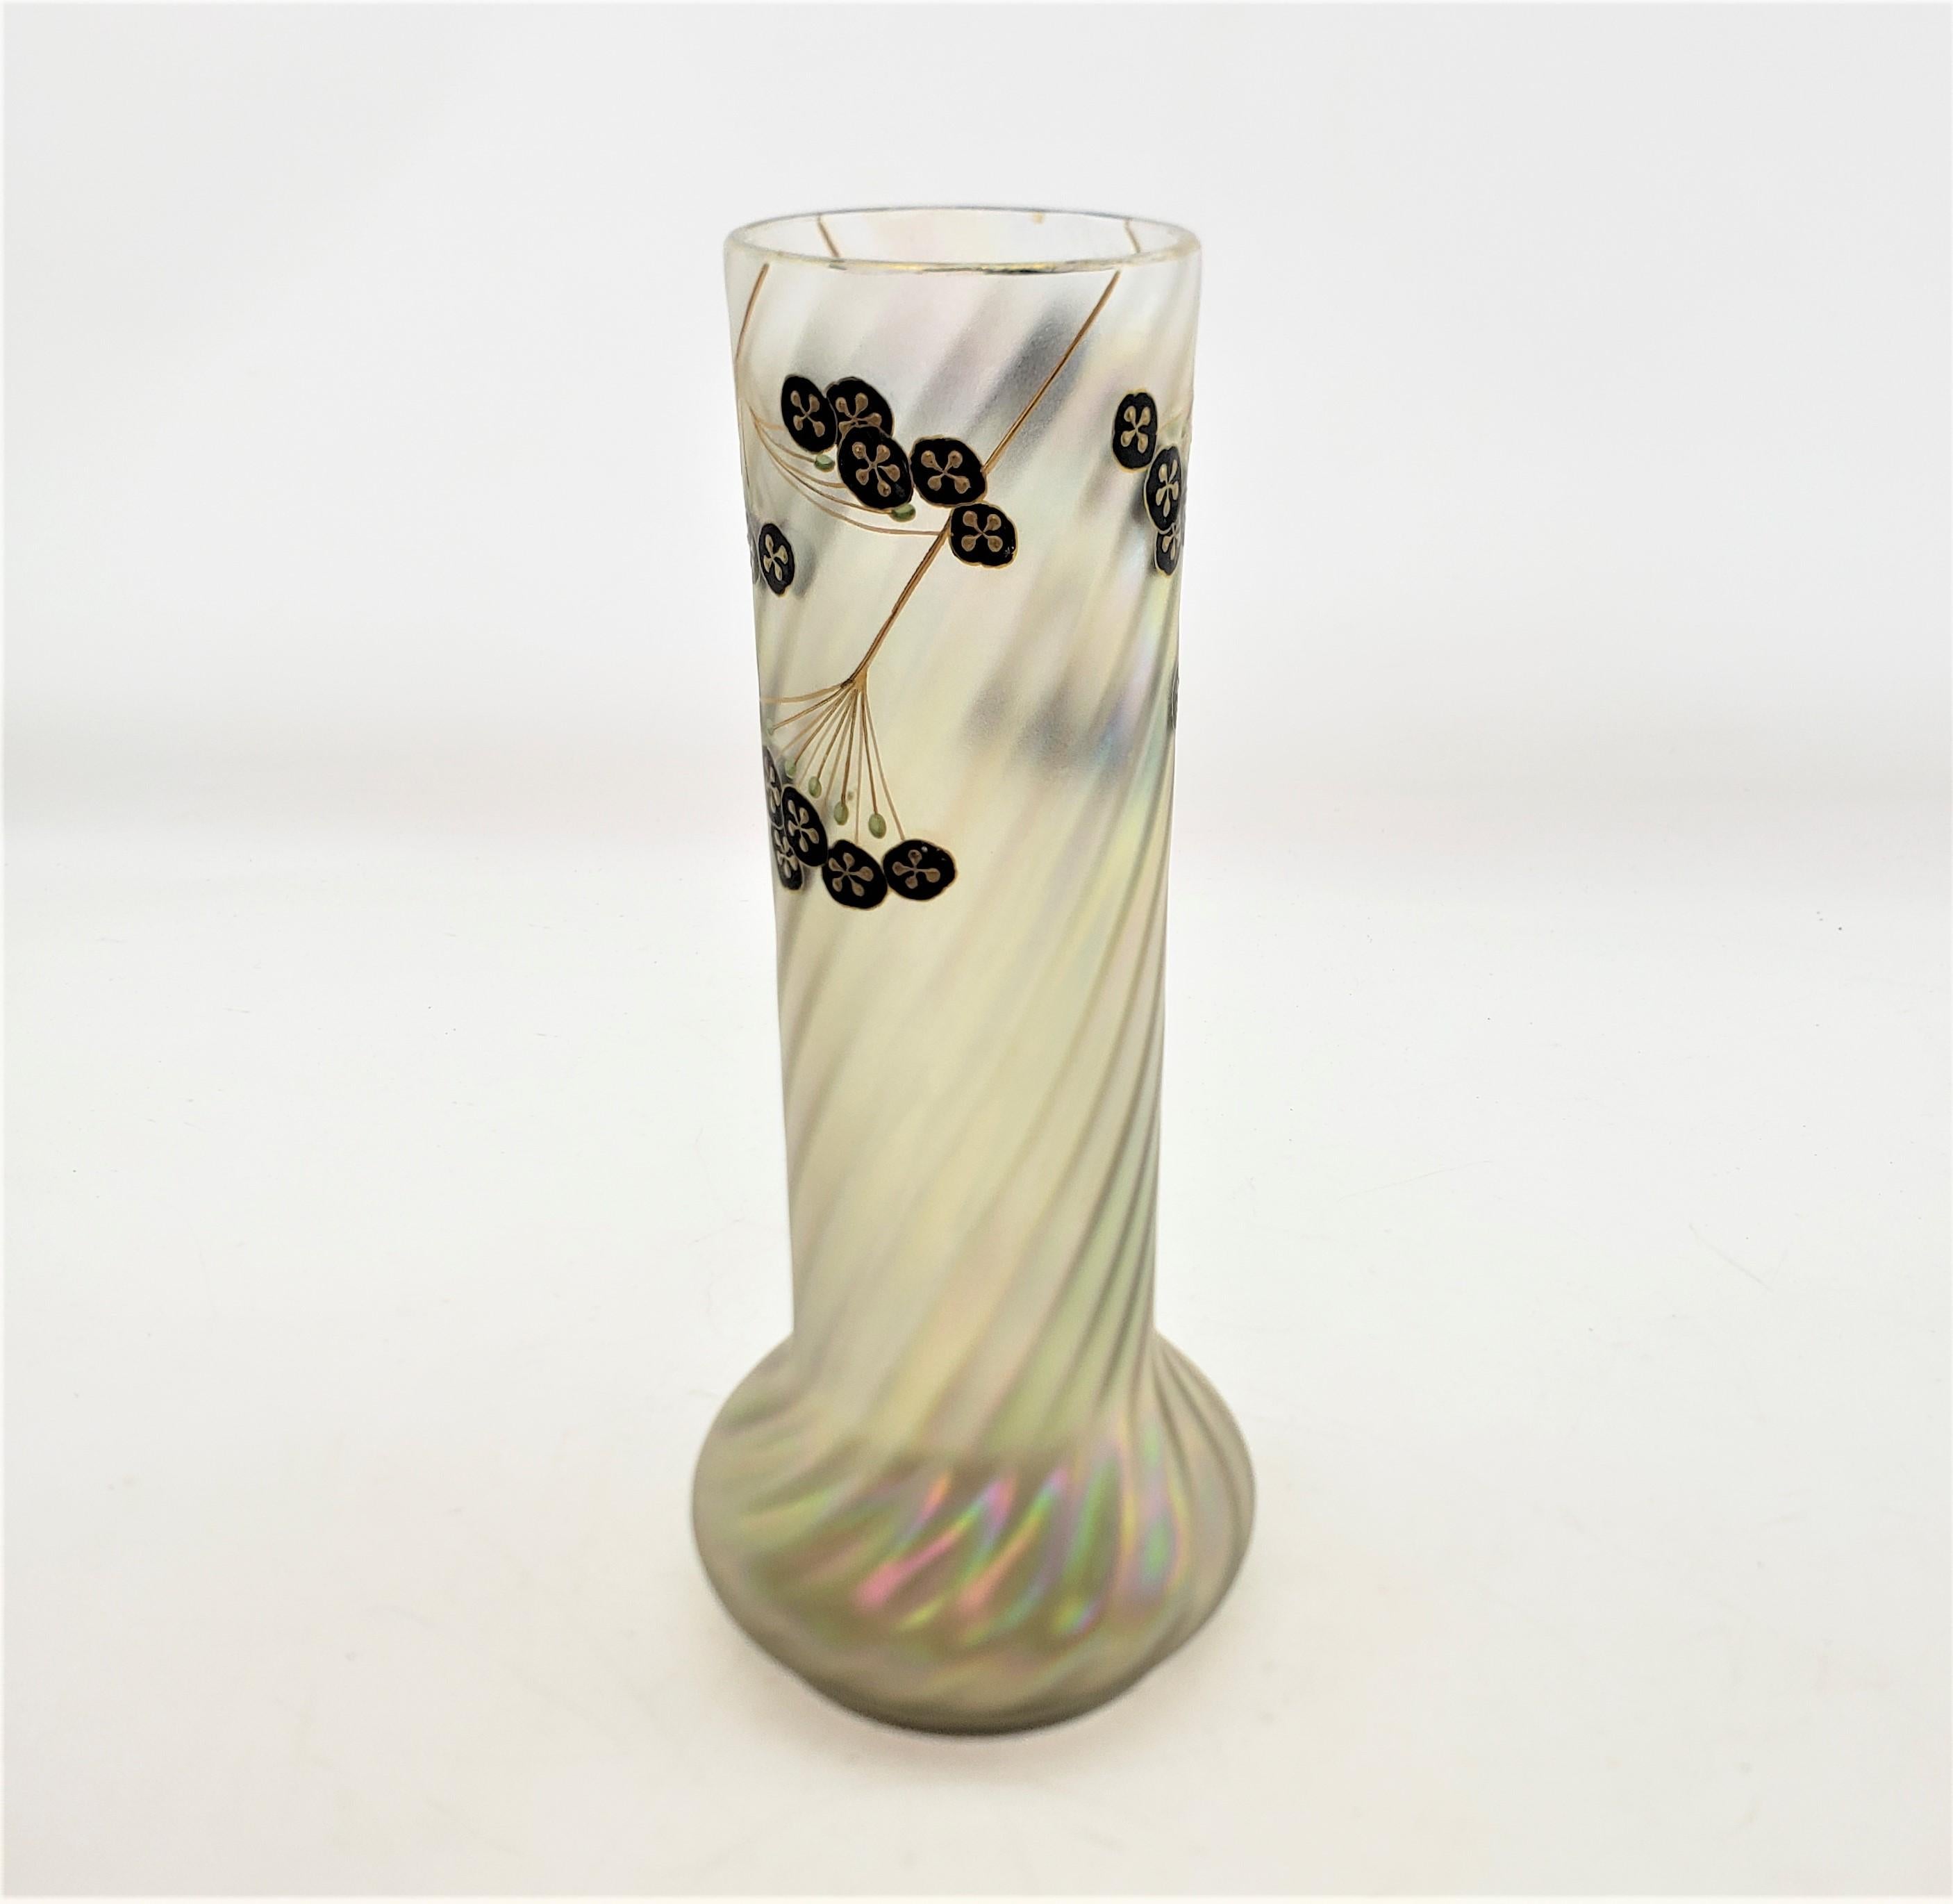 Austrian Antique Art Nouveau Iridescent Art Glass Vase with Enamel Floral Decoration For Sale